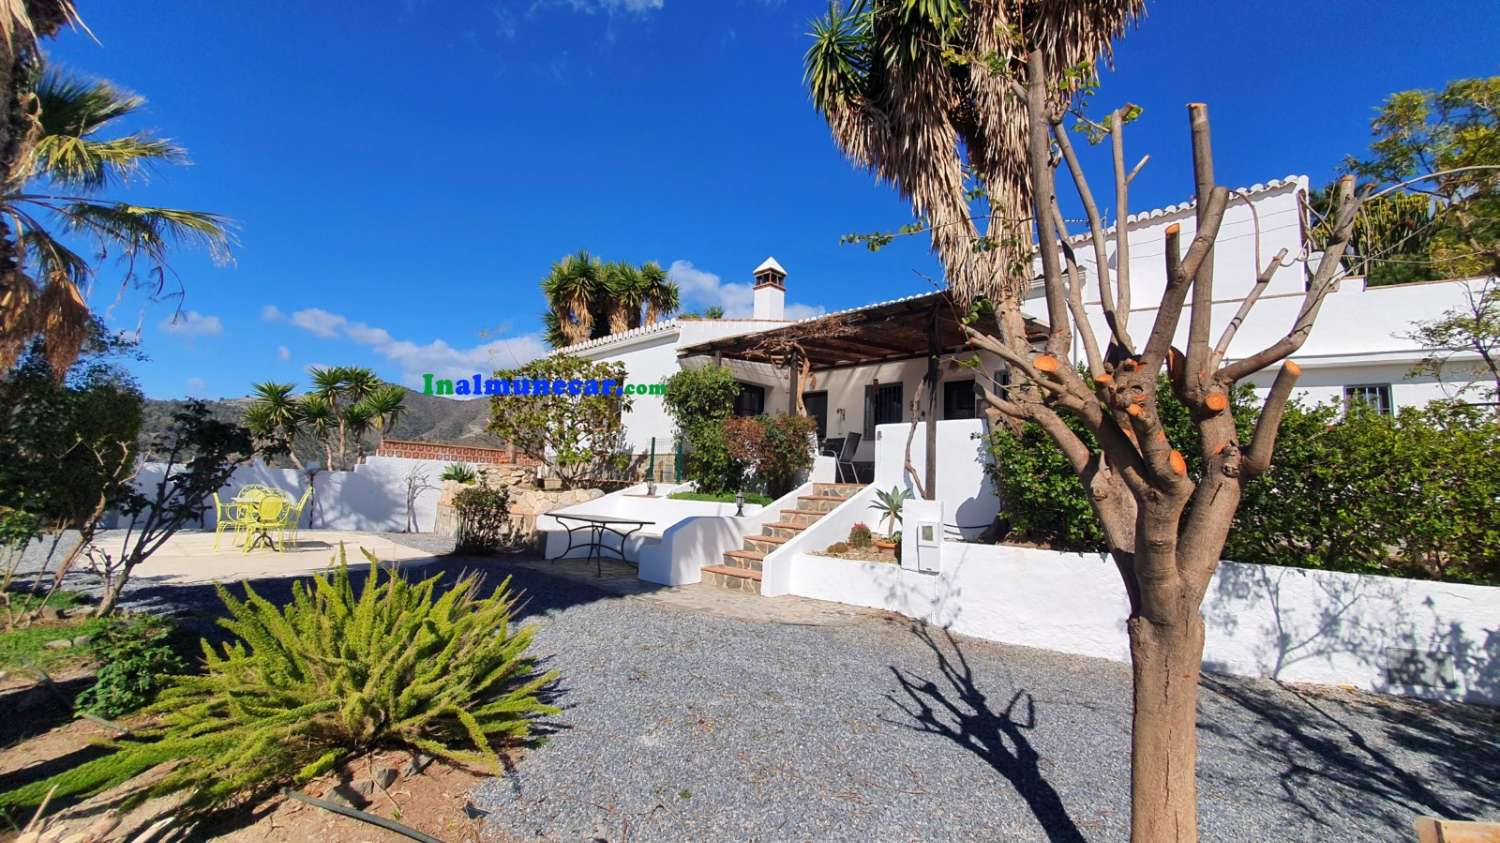 Landhaus zum Verkauf in der Bucht von La Herradura, Andalusien.